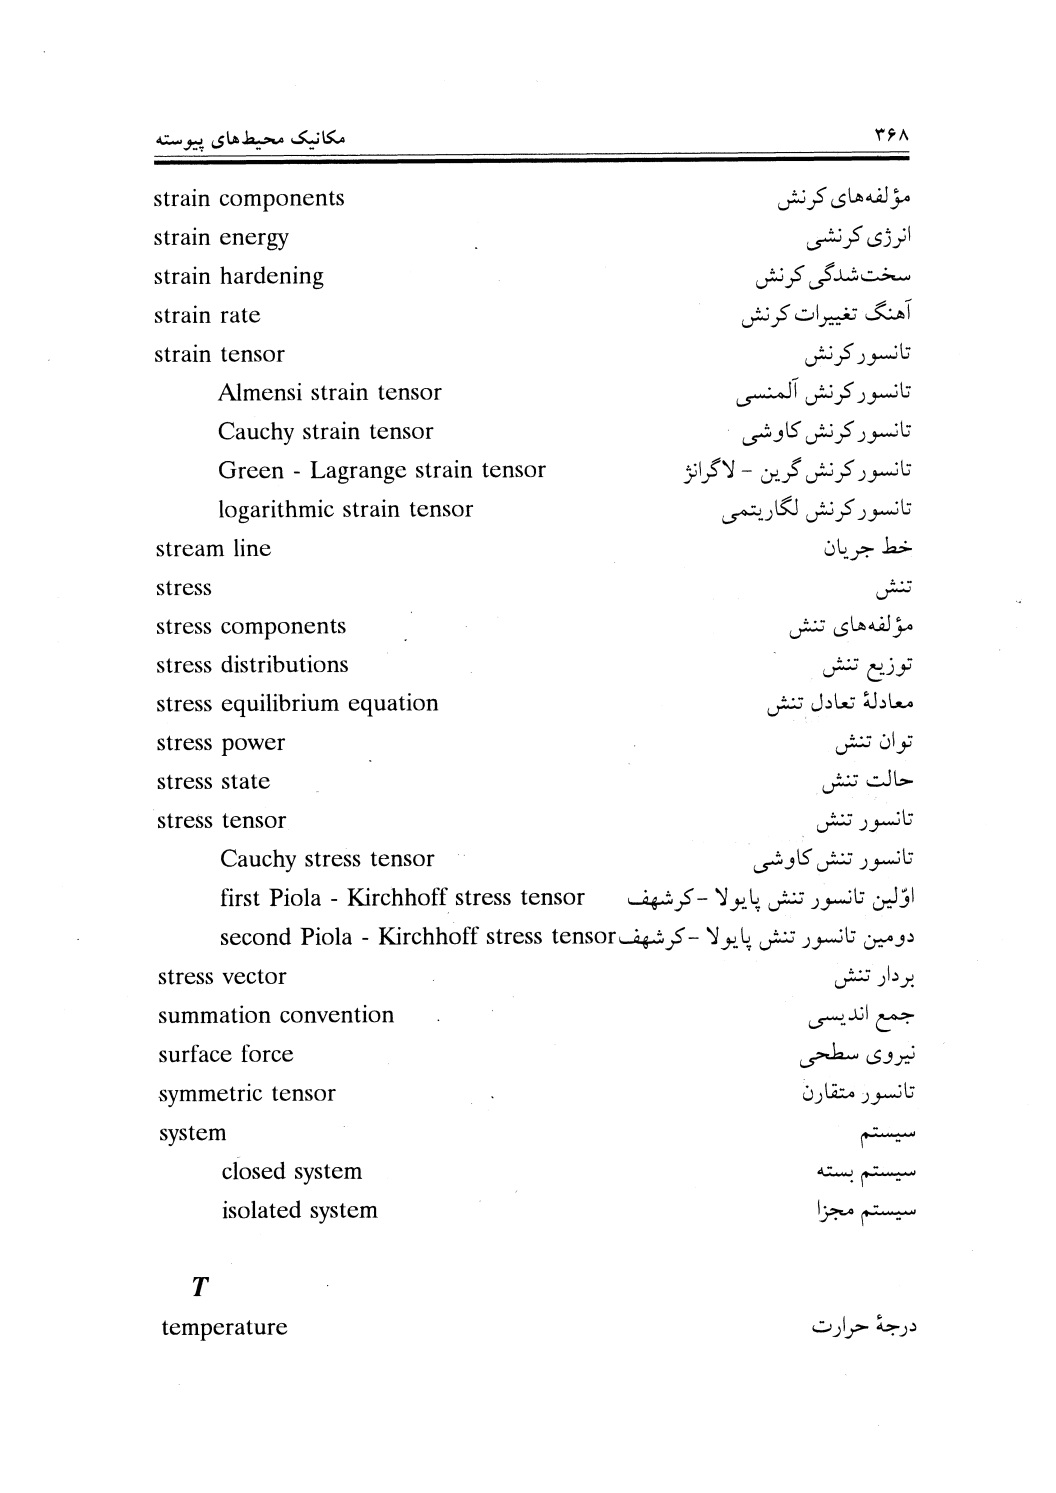 دانلود پی دی اف کتاب مکانیک محیط های پیوسته از قادی و رحیمیان - 371 صفحه PDF